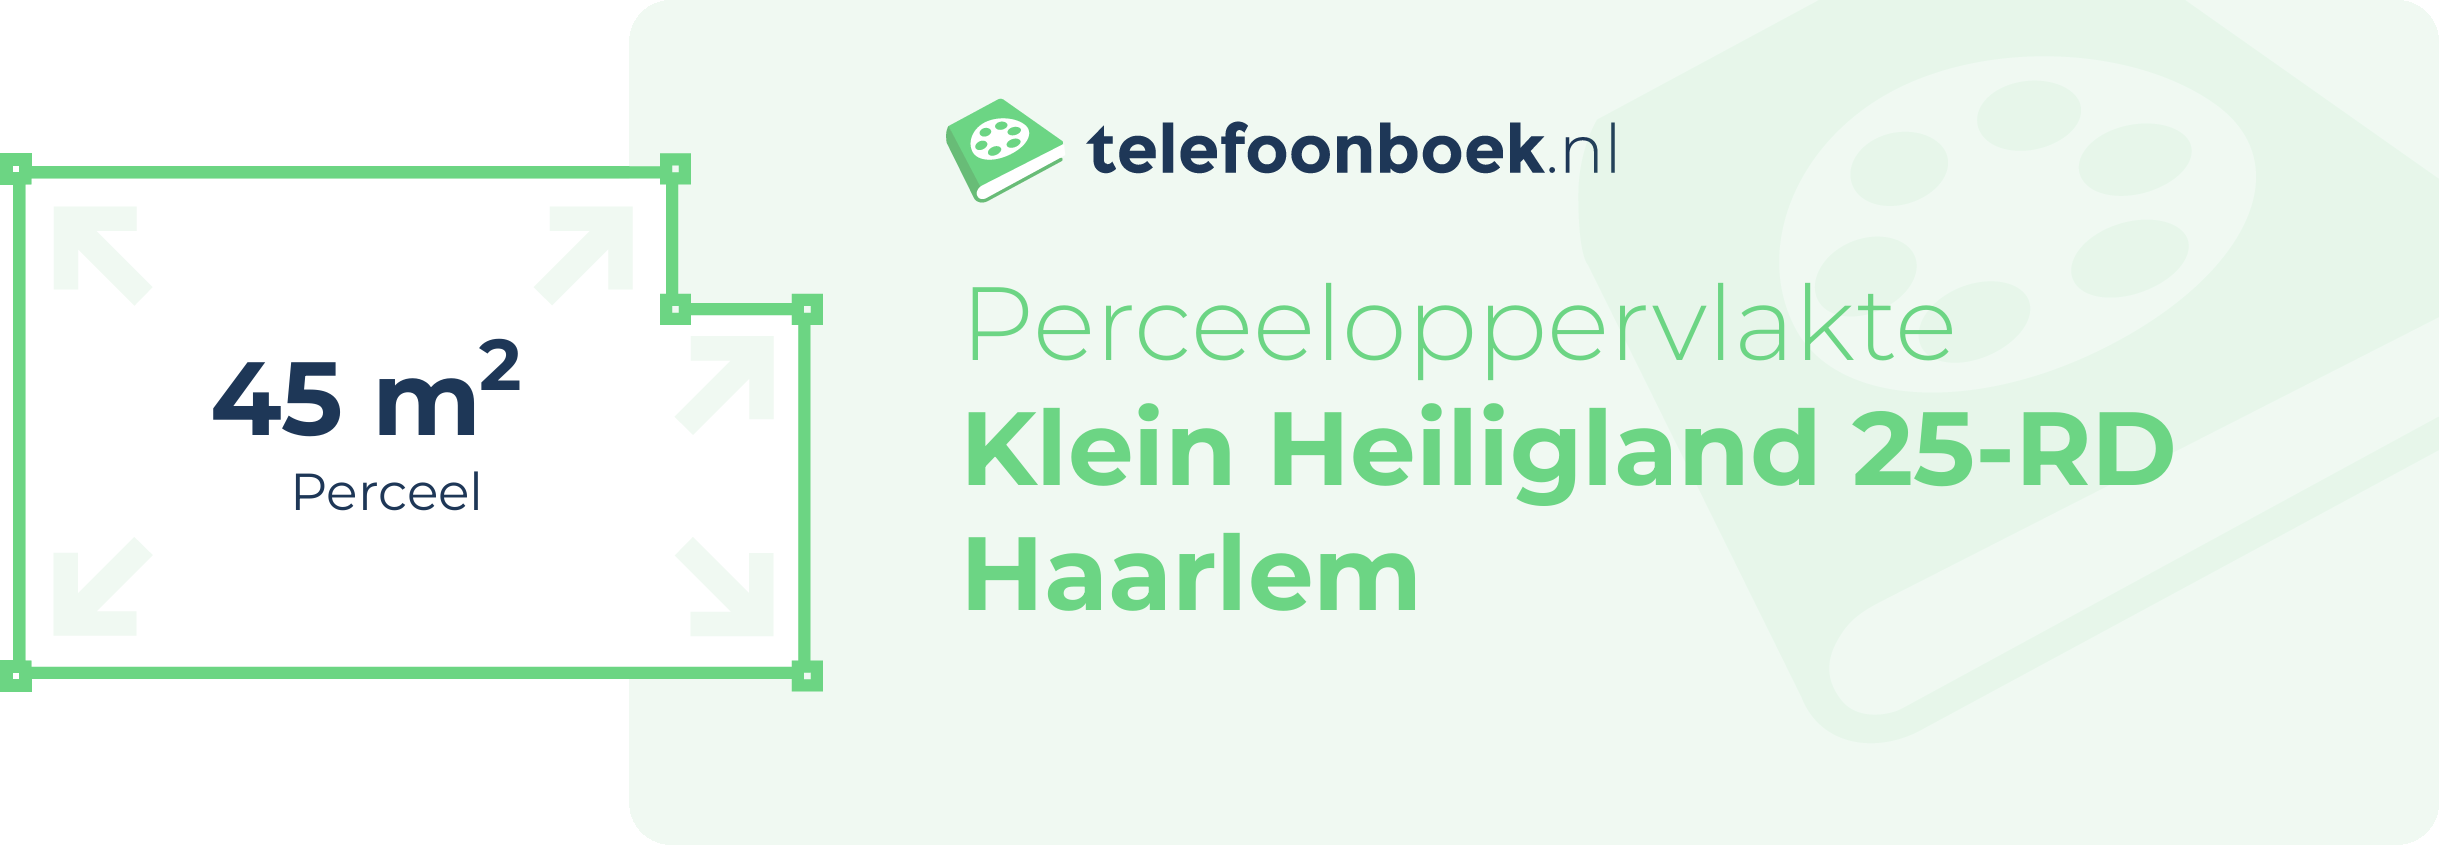 Perceeloppervlakte Klein Heiligland 25-RD Haarlem